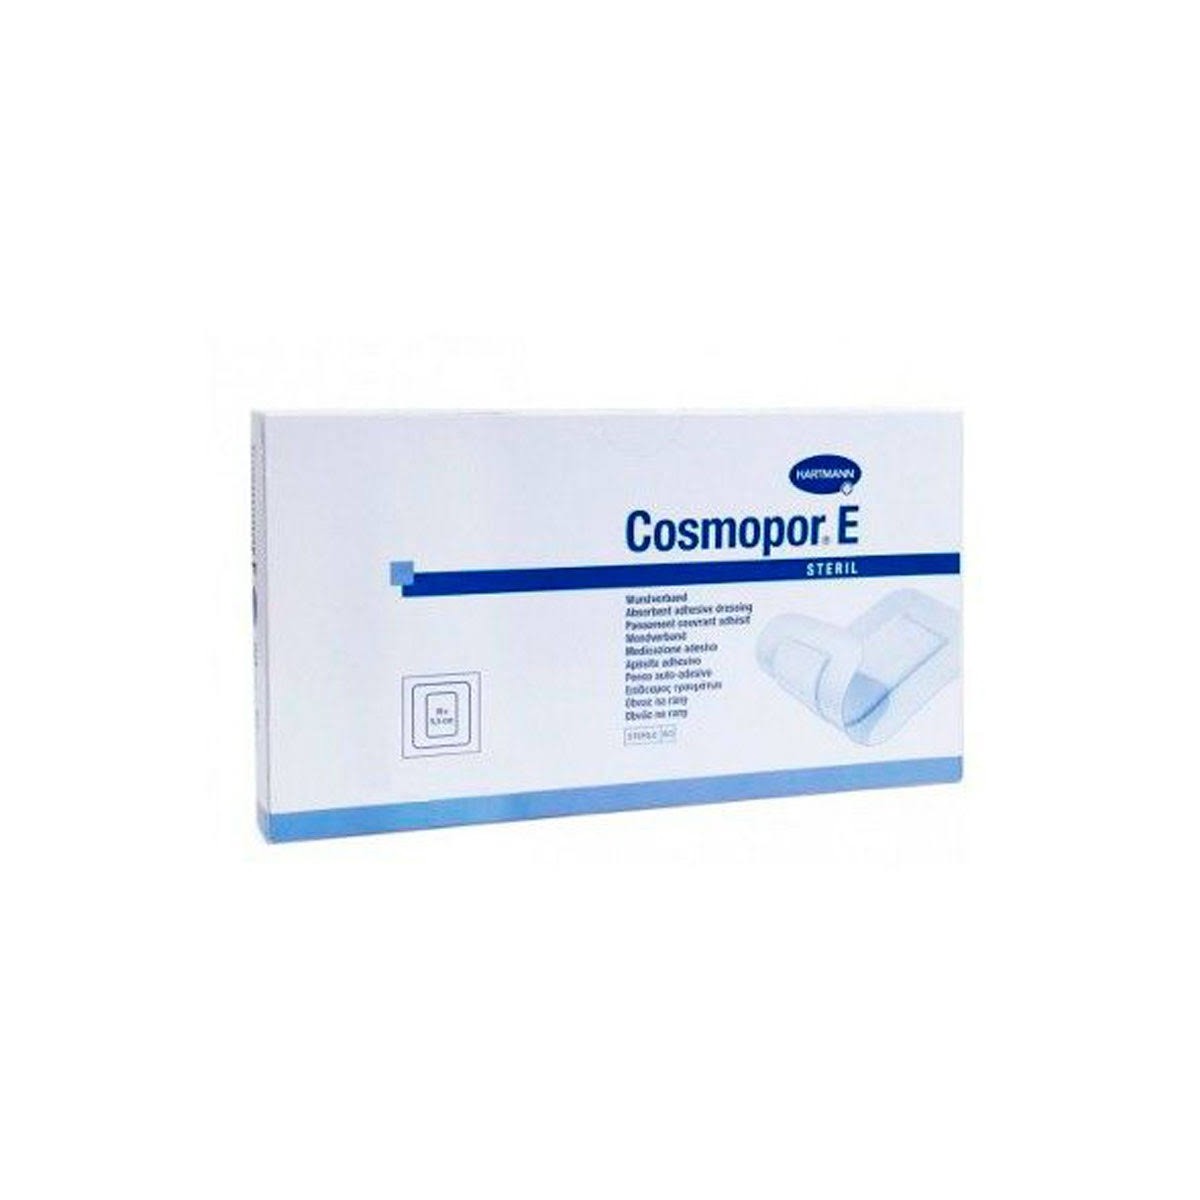 cosmopor-e-steril-15-x-8-cm-10-apositos